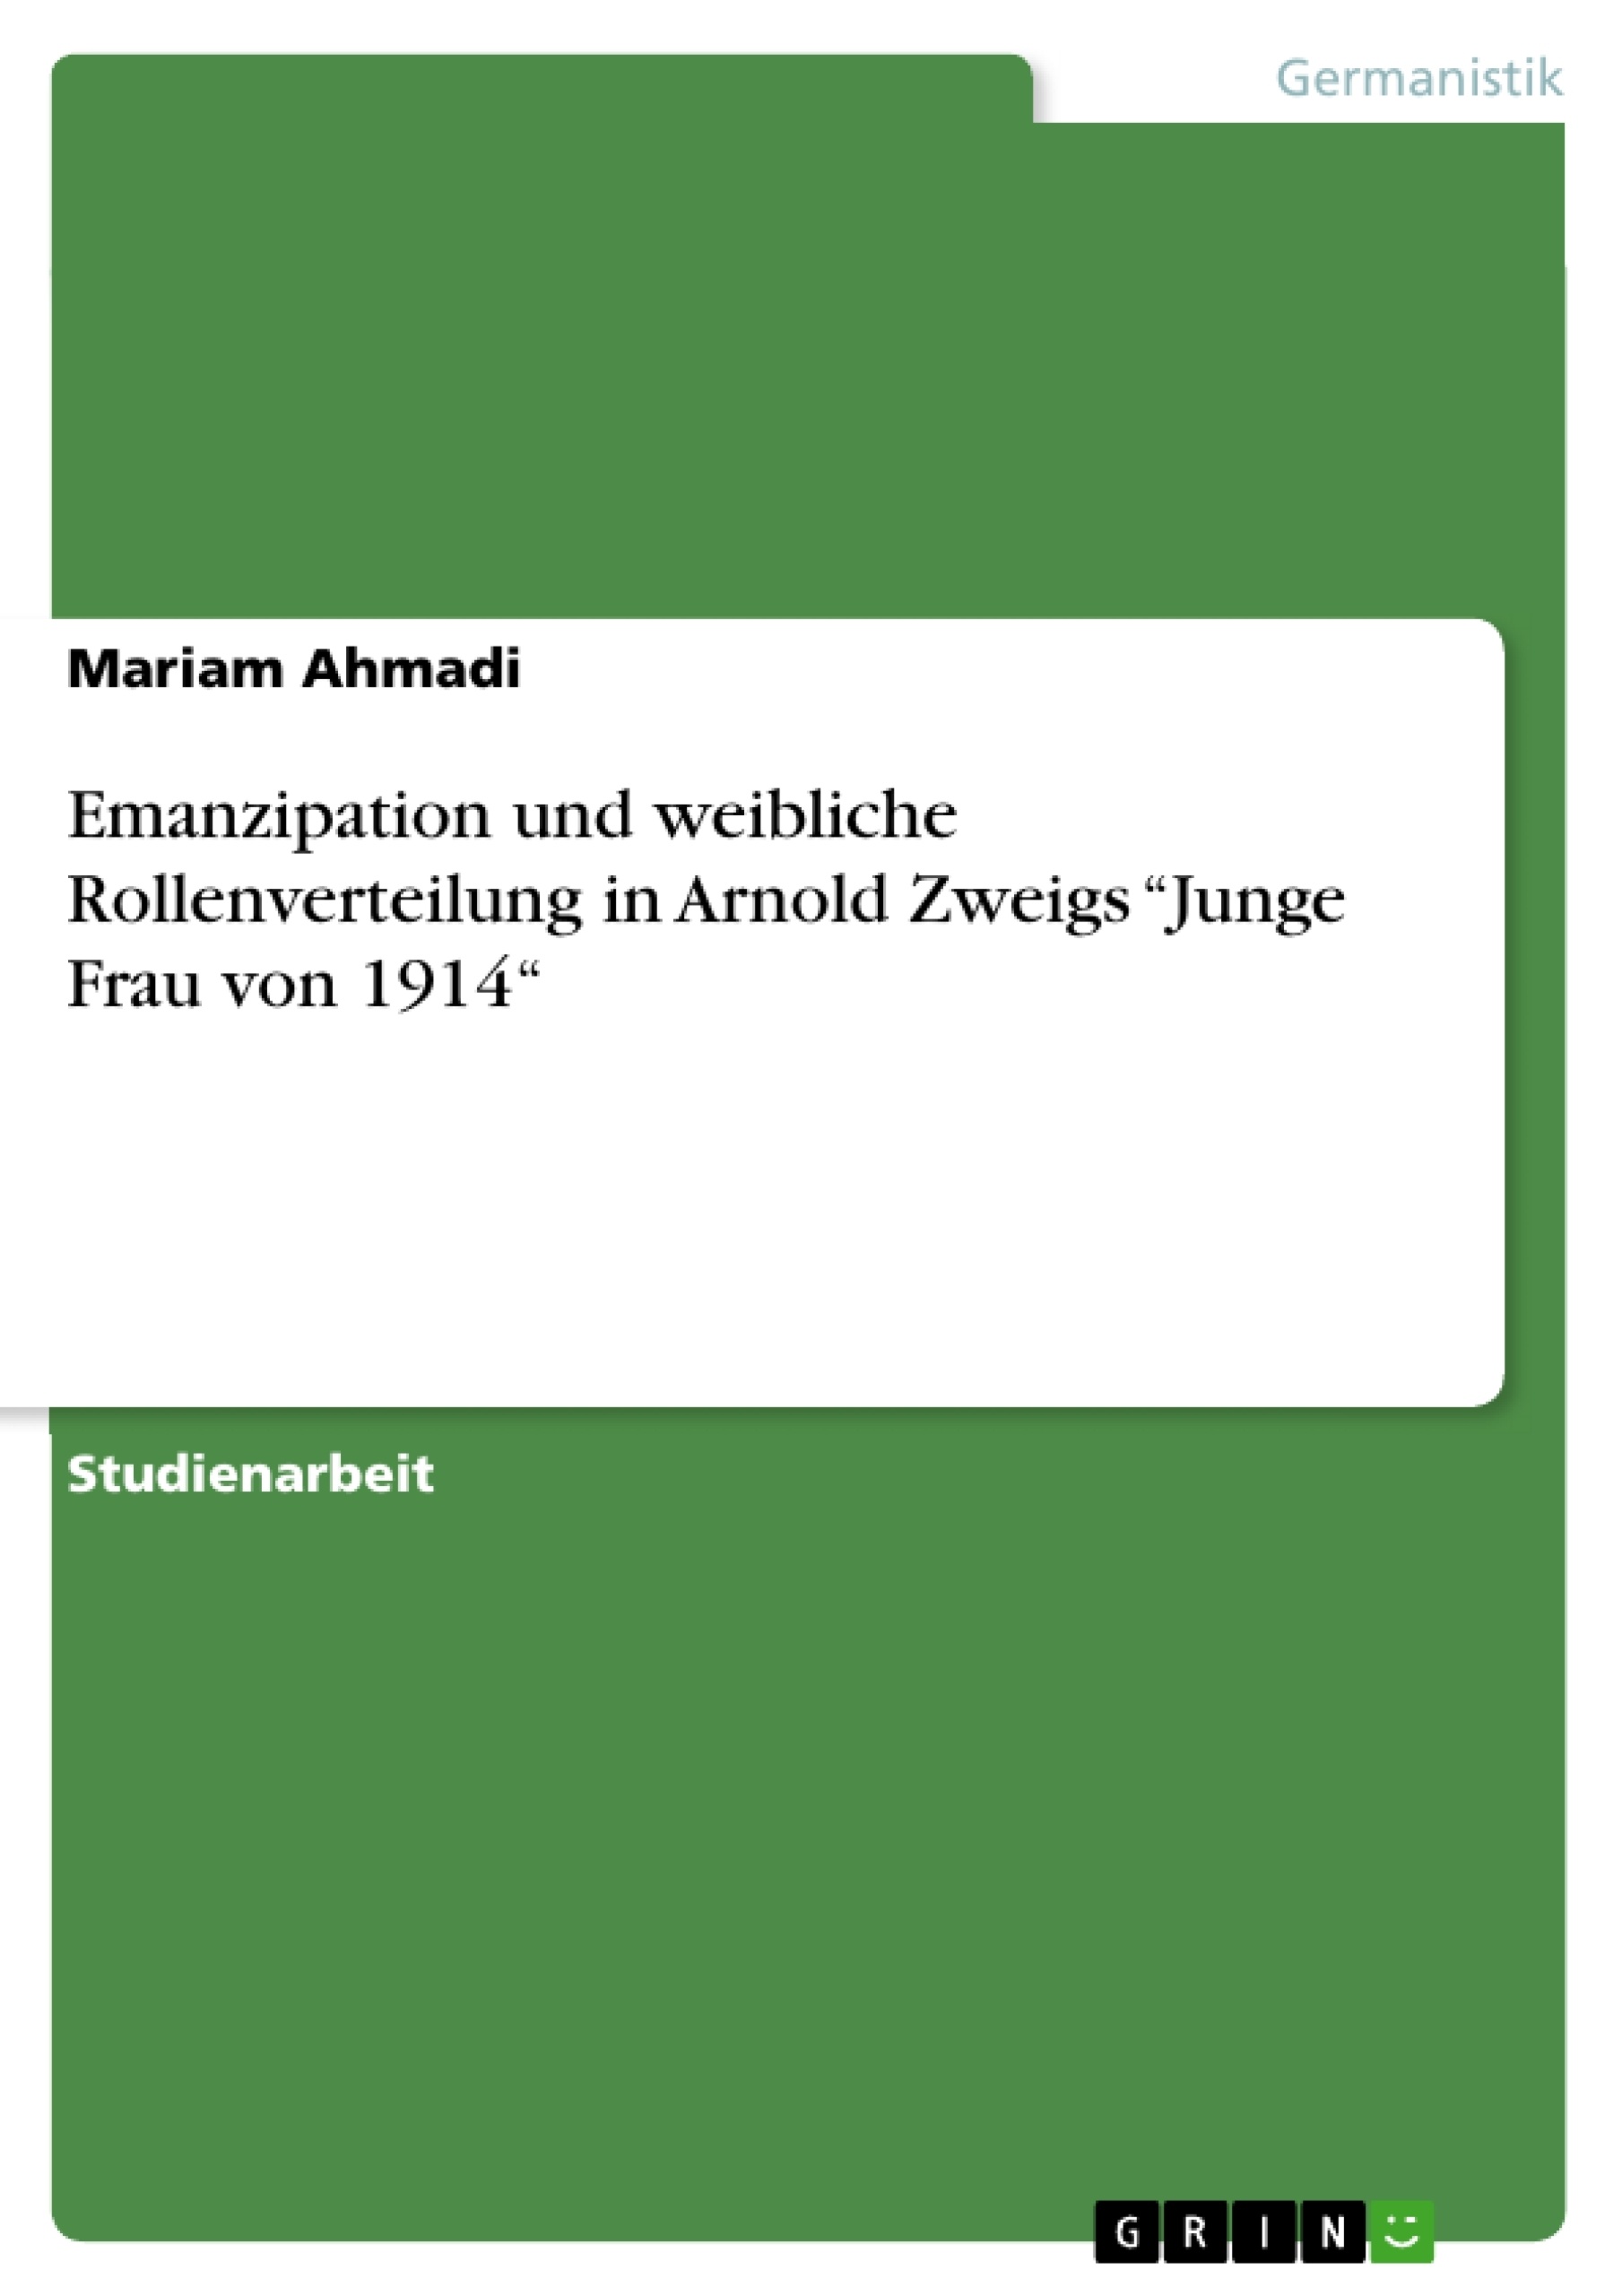 Title: Emanzipation und weibliche Rollenverteilung in Arnold Zweigs “Junge Frau von 1914“